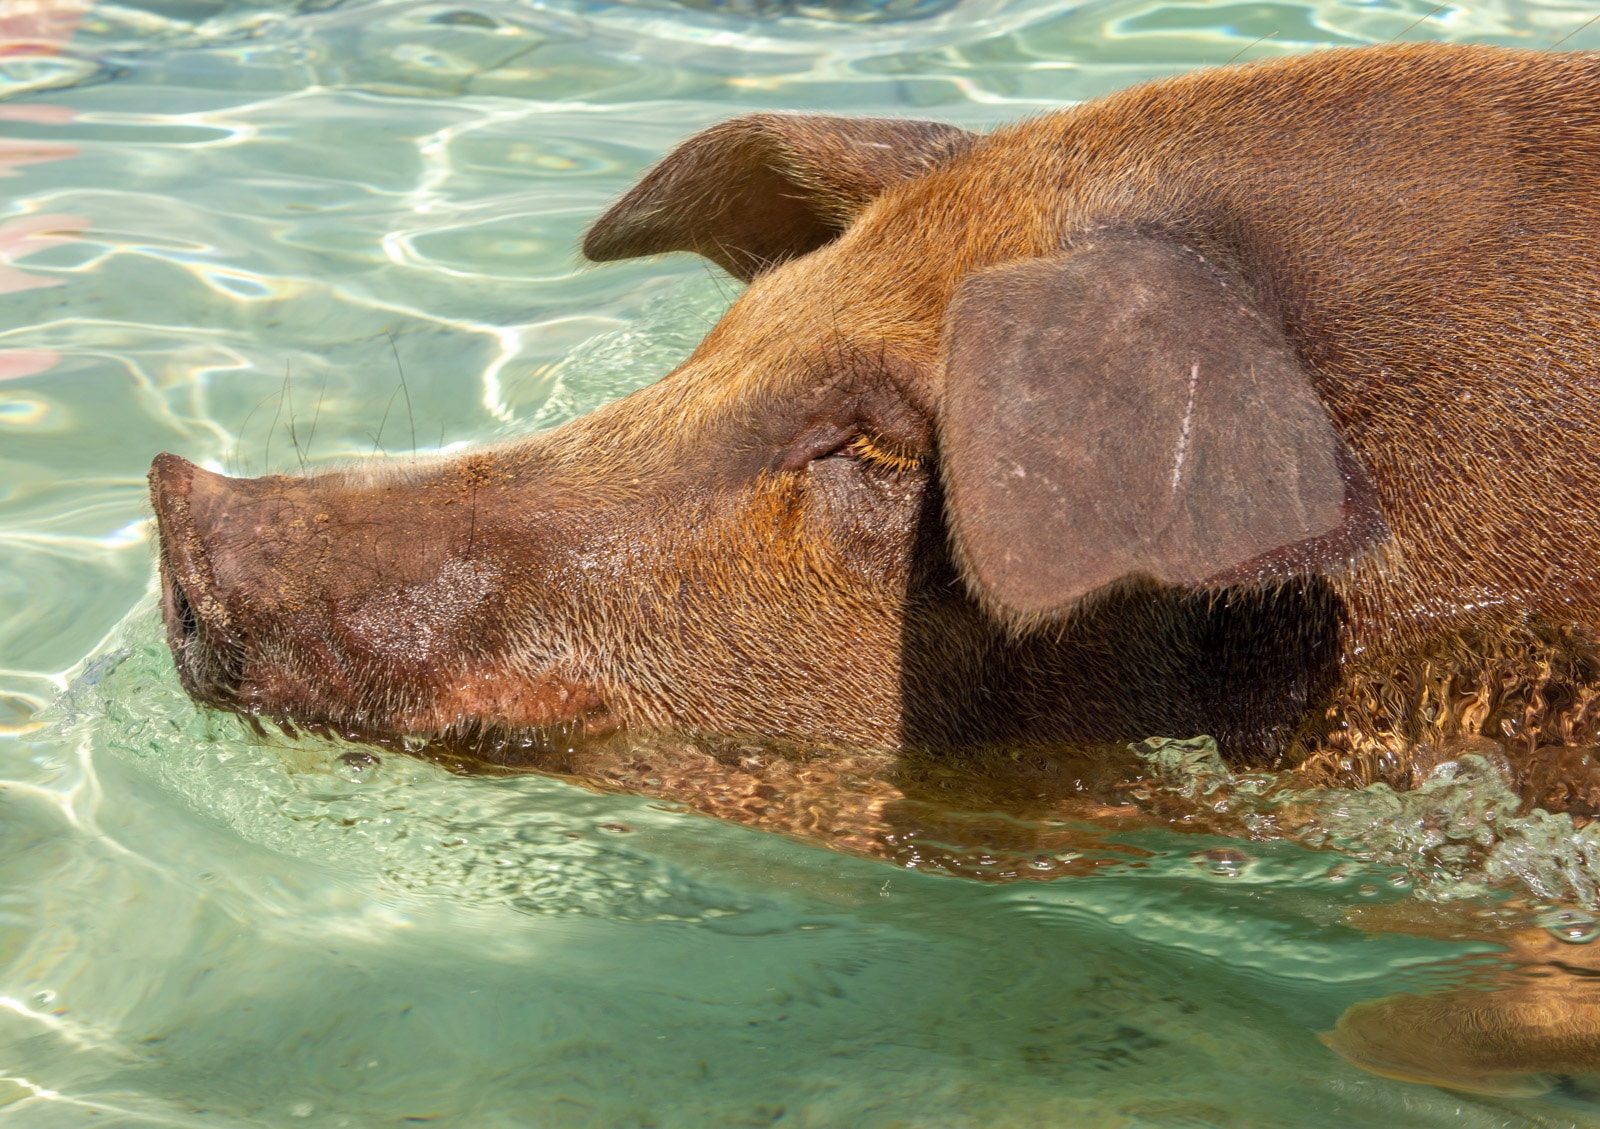 Świnie na Bahamach